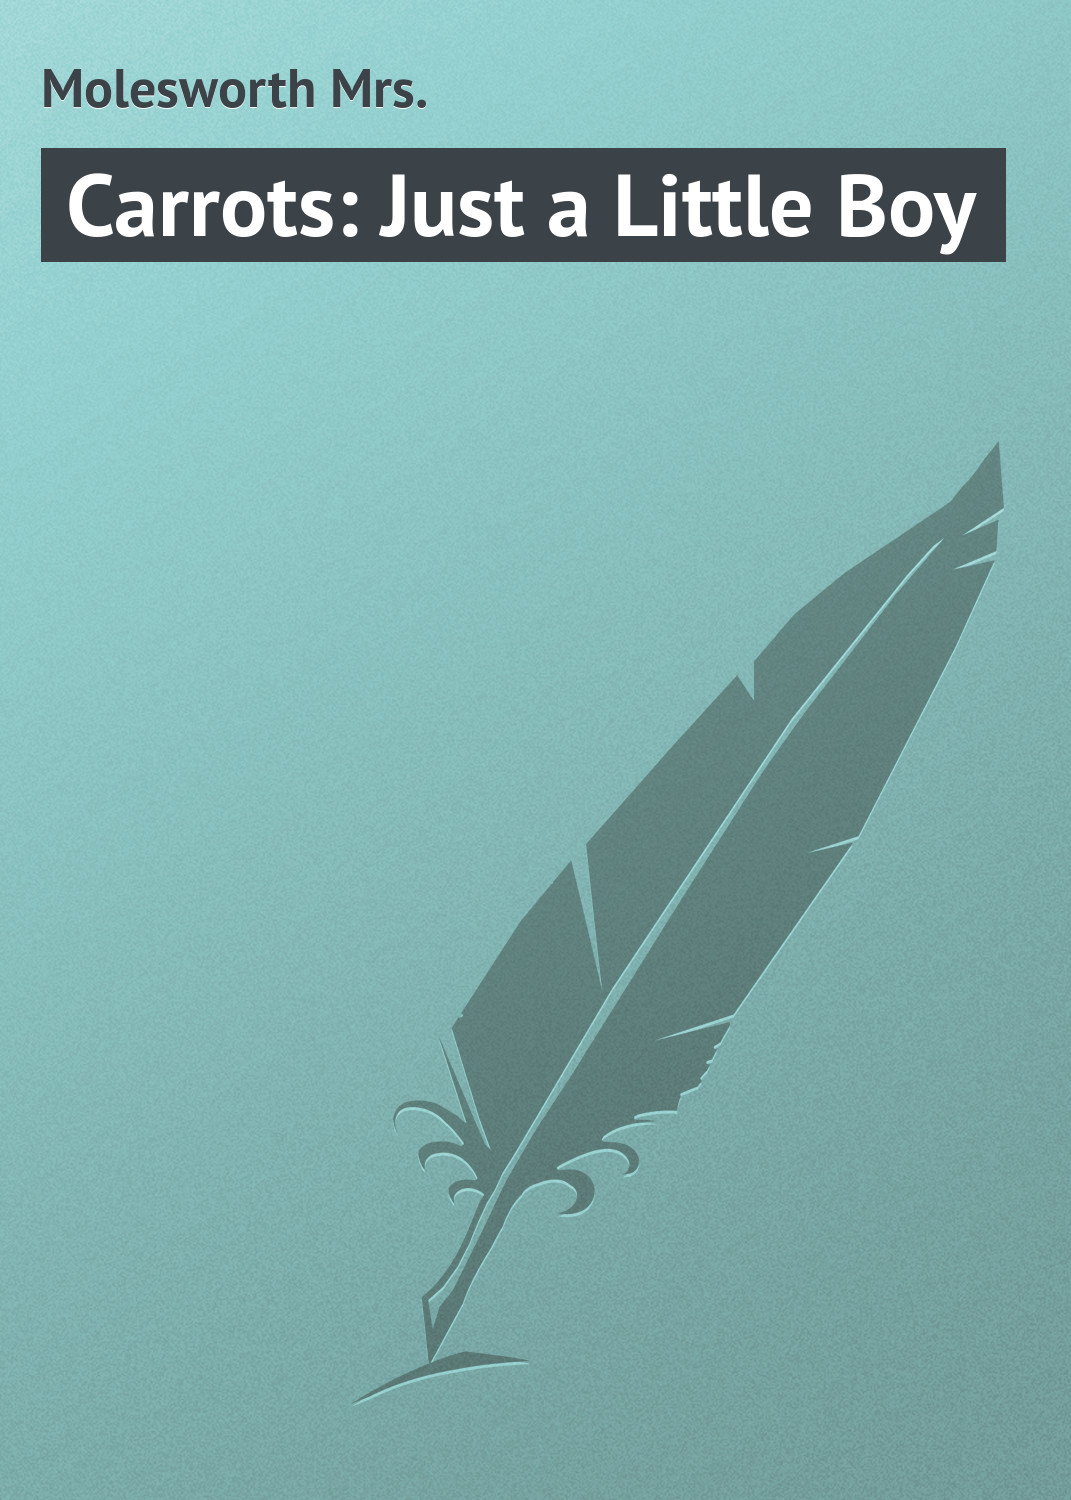 Книга Carrots: Just a Little Boy из серии , созданная Mrs. Molesworth, может относится к жанру Зарубежная классика. Стоимость электронной книги Carrots: Just a Little Boy с идентификатором 23165123 составляет 5.99 руб.